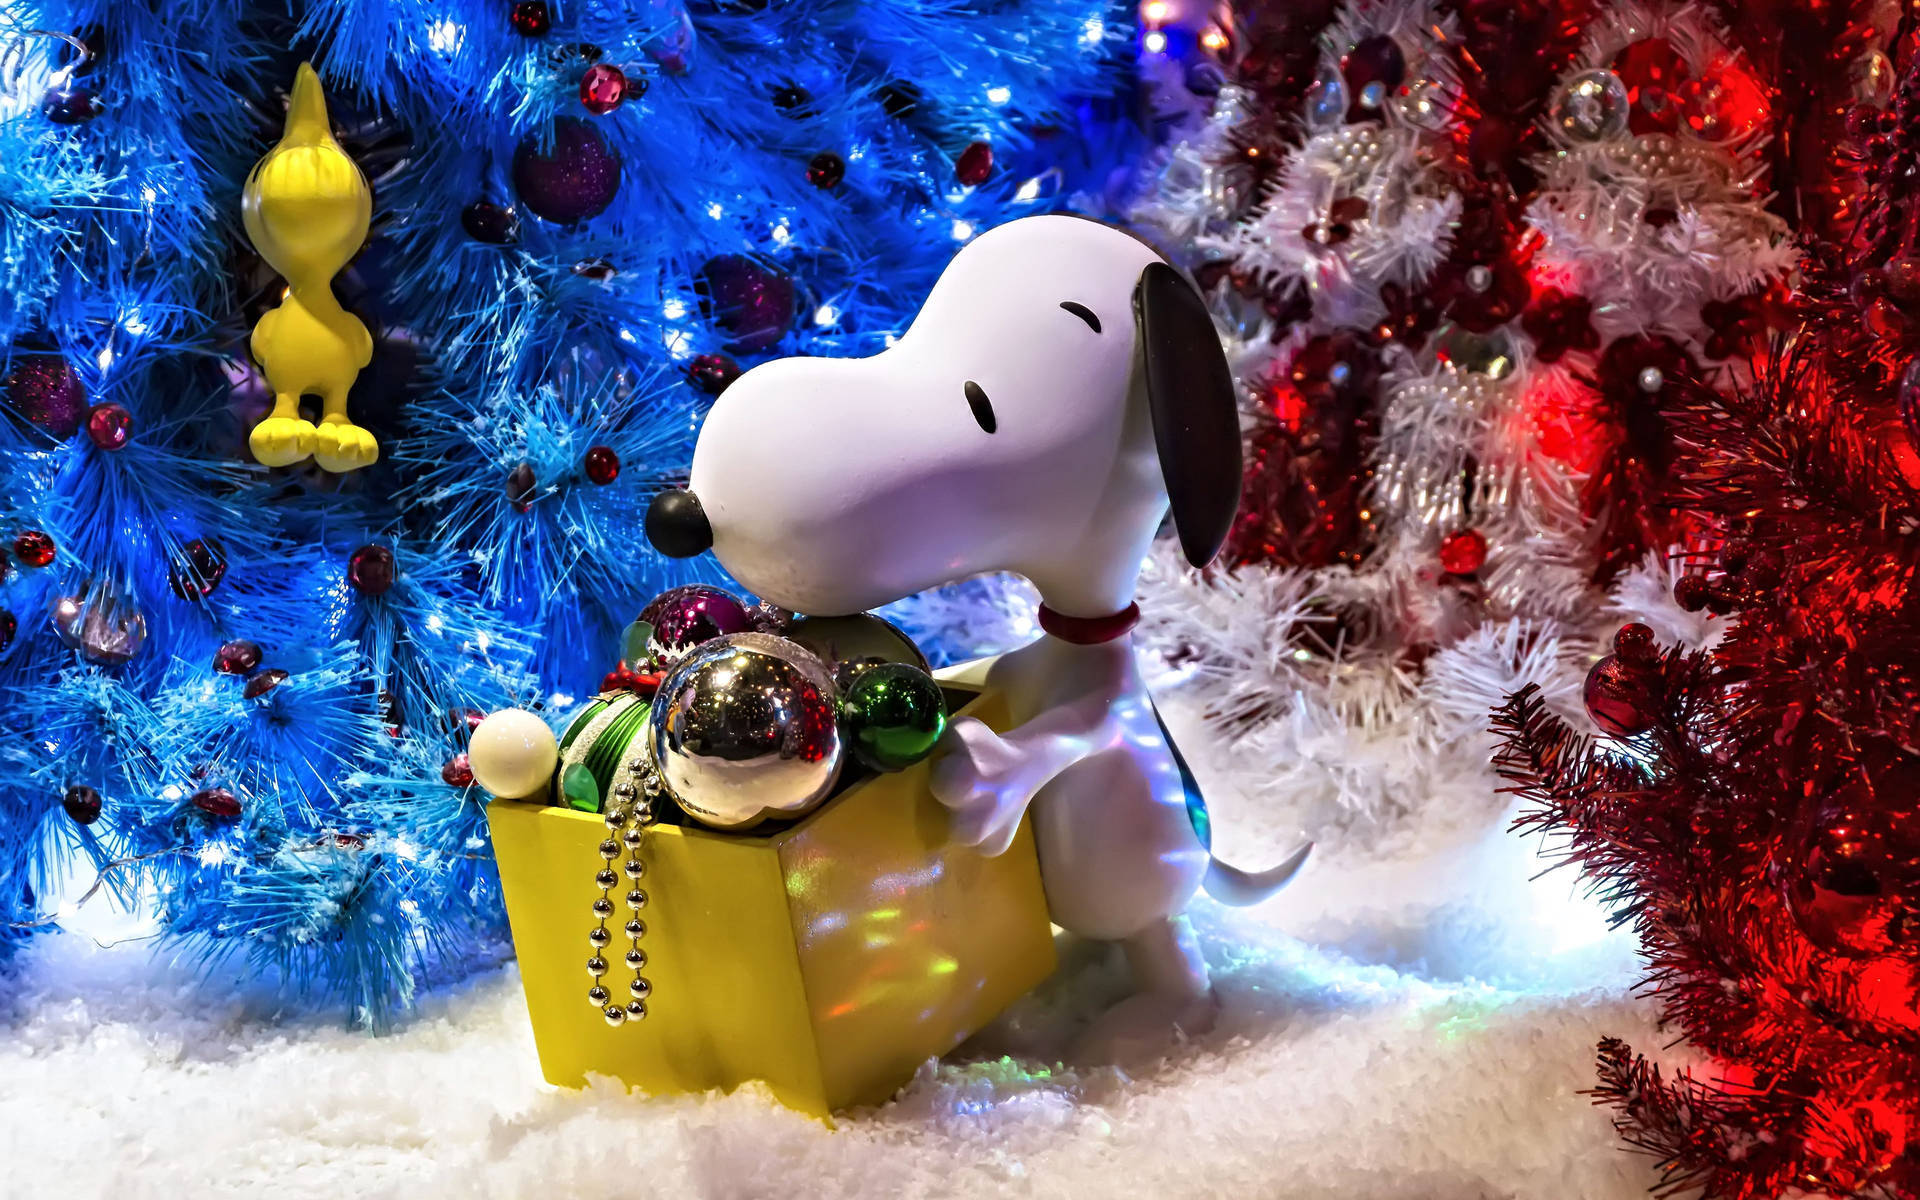 Nyd festivitasenne denne ferie sæson med Snoopy! Wallpaper